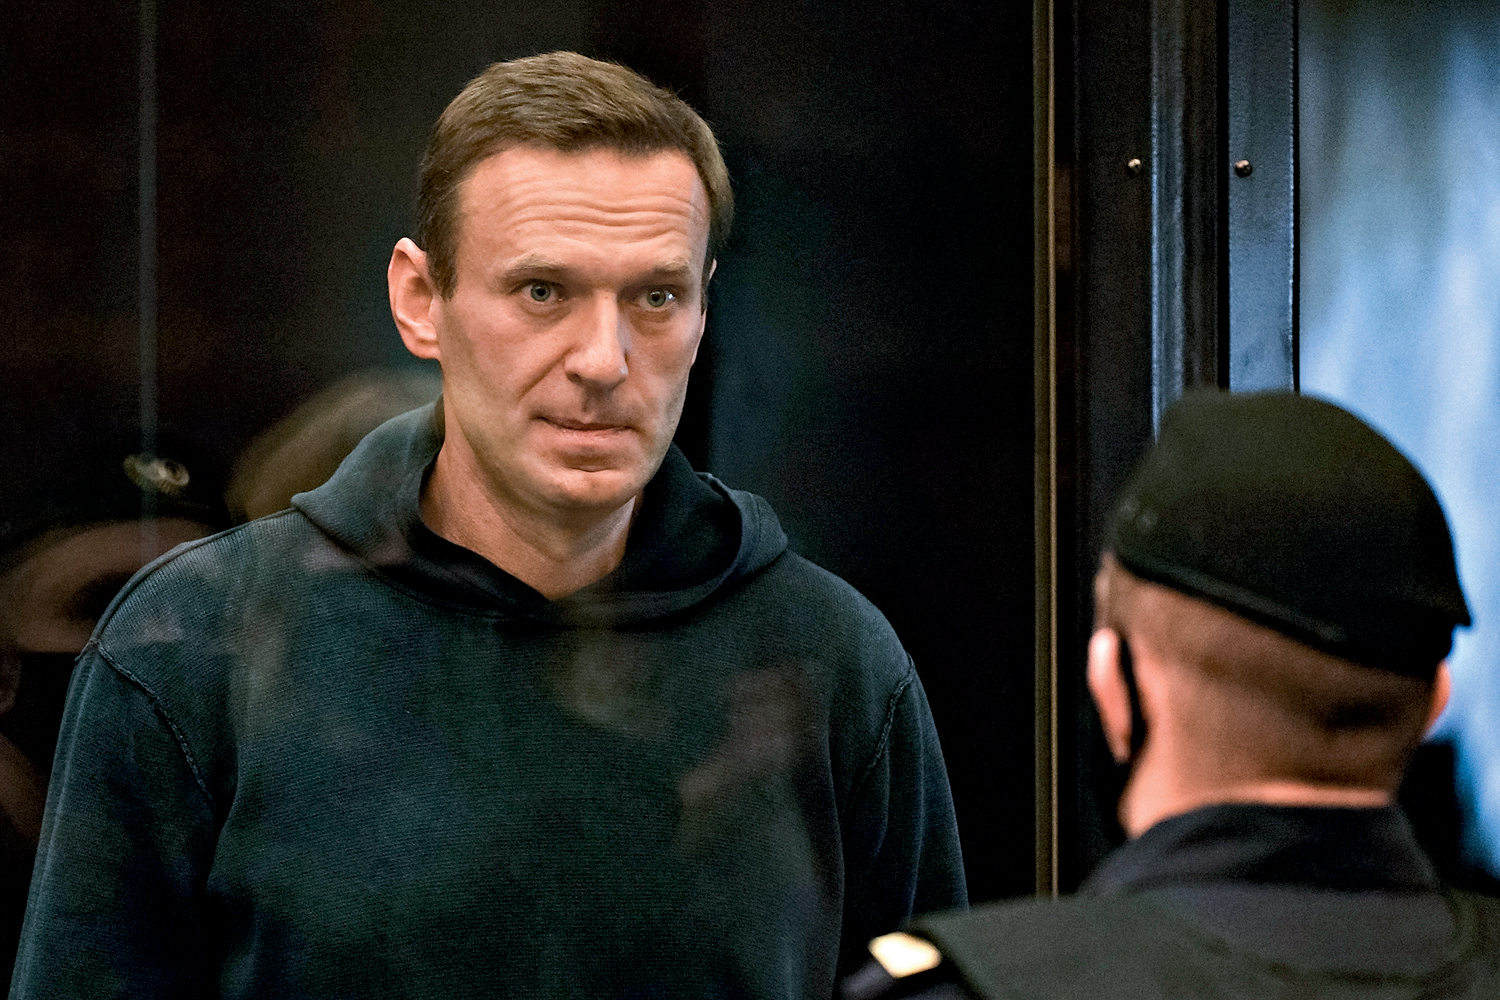 PROVOCAÇÕES - Navalny no tribunal: “Vladimir, o envenenador de cuecas” -